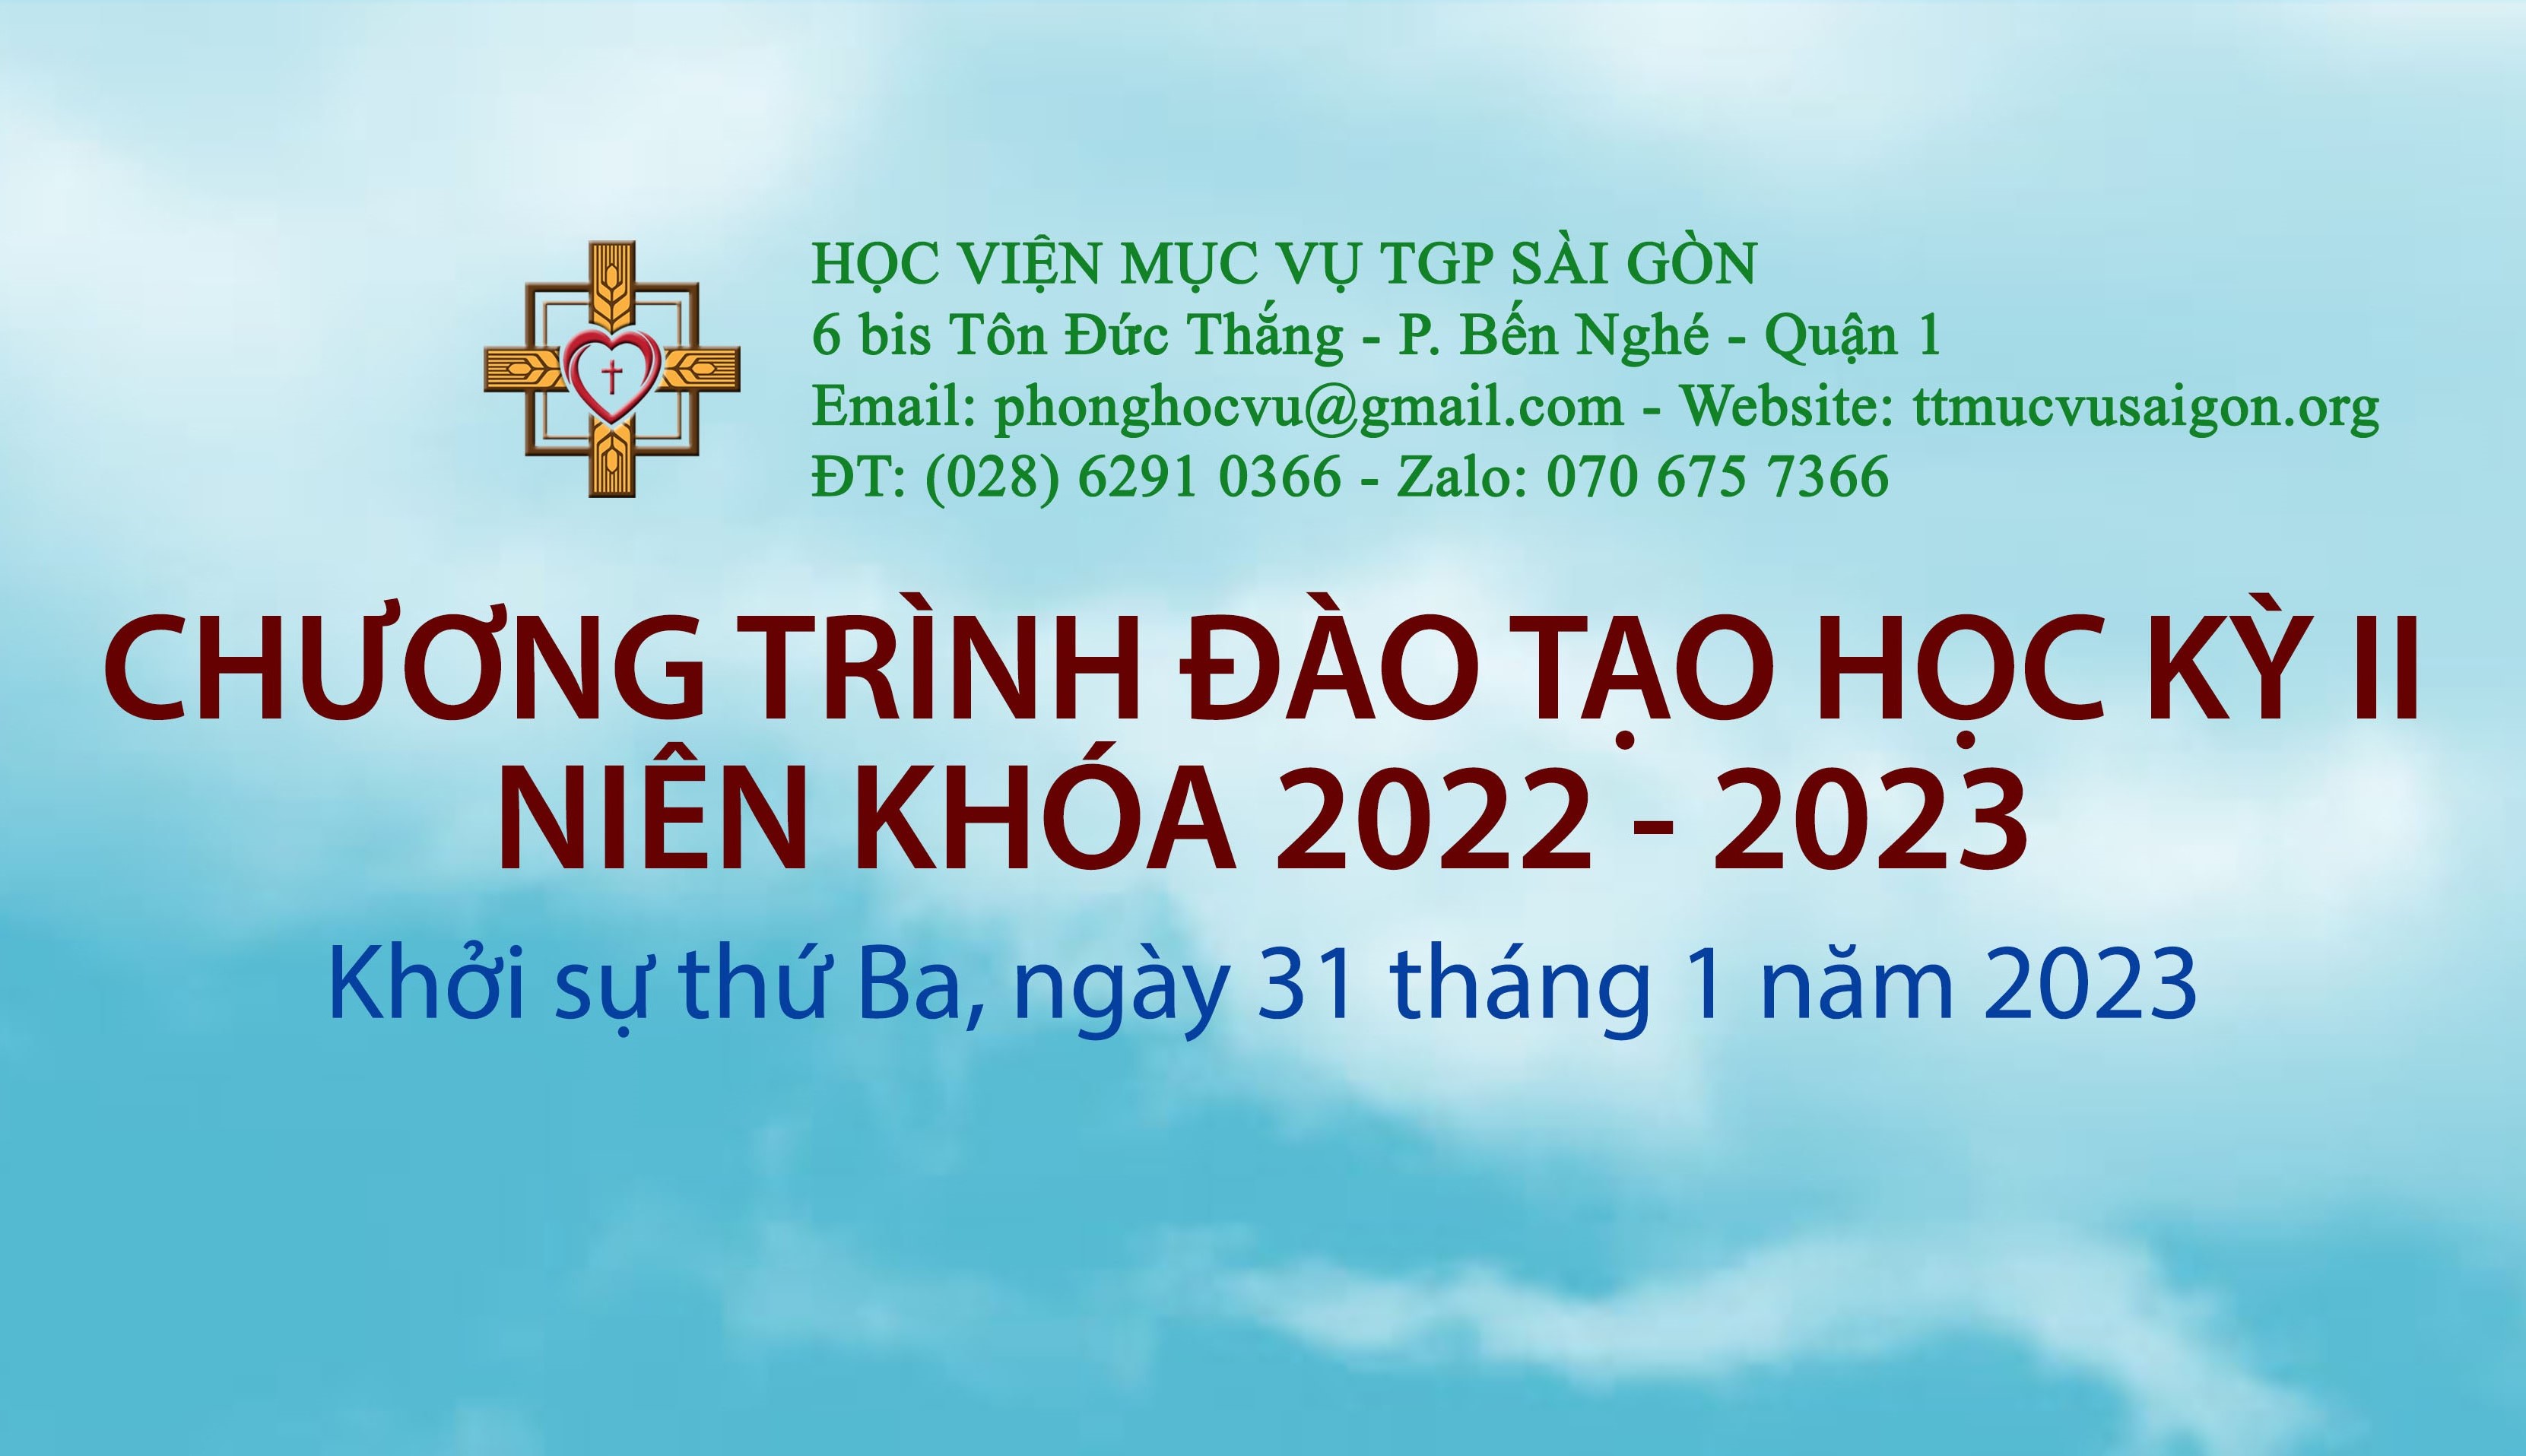 Học viện Mục vụ TGP Sài Gòn: Thông báo chiêu sinh các khóa học mới